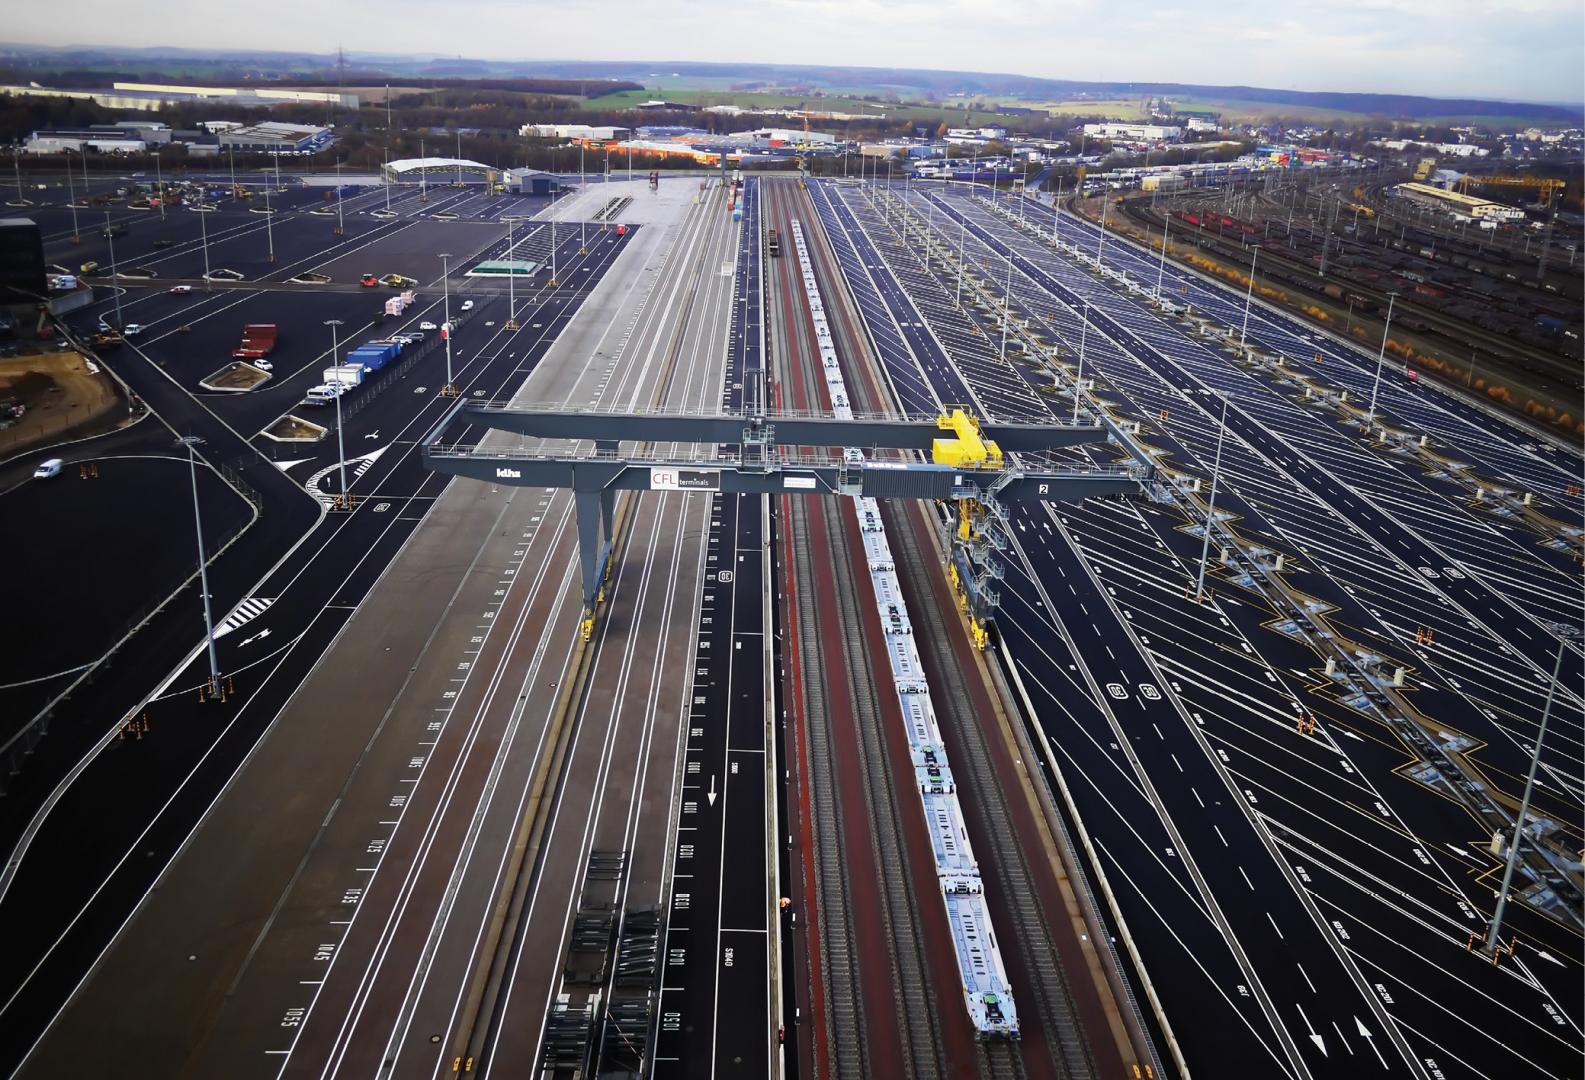 1 Nouveaux terminaux intermodaux rail/route à Bettembourg - Dudelange Maître d’oeuvre : AM SGI/FELGEN Mission A.M. HBH S.A./SNCF : Assistance à la maîtrise d’ouvrage